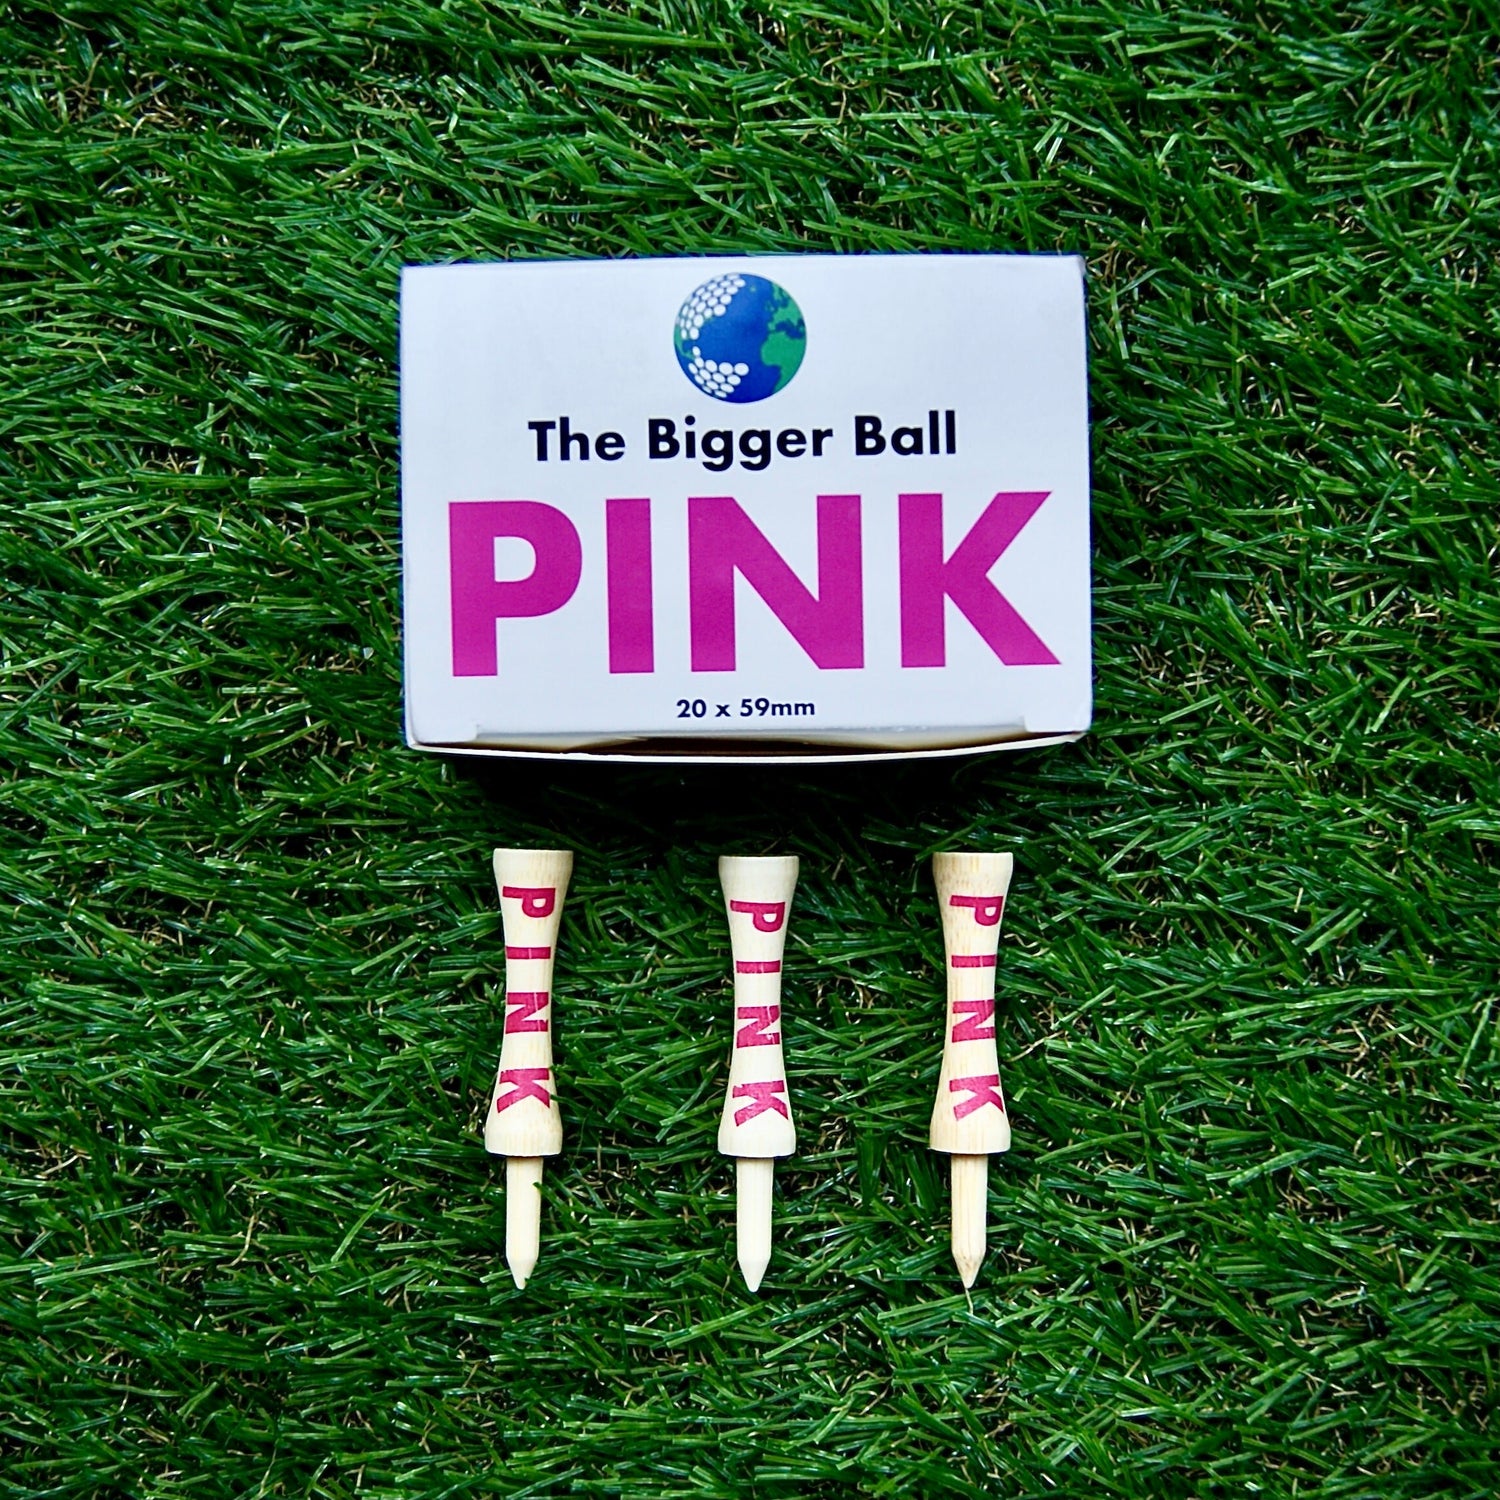 Pink golf tees